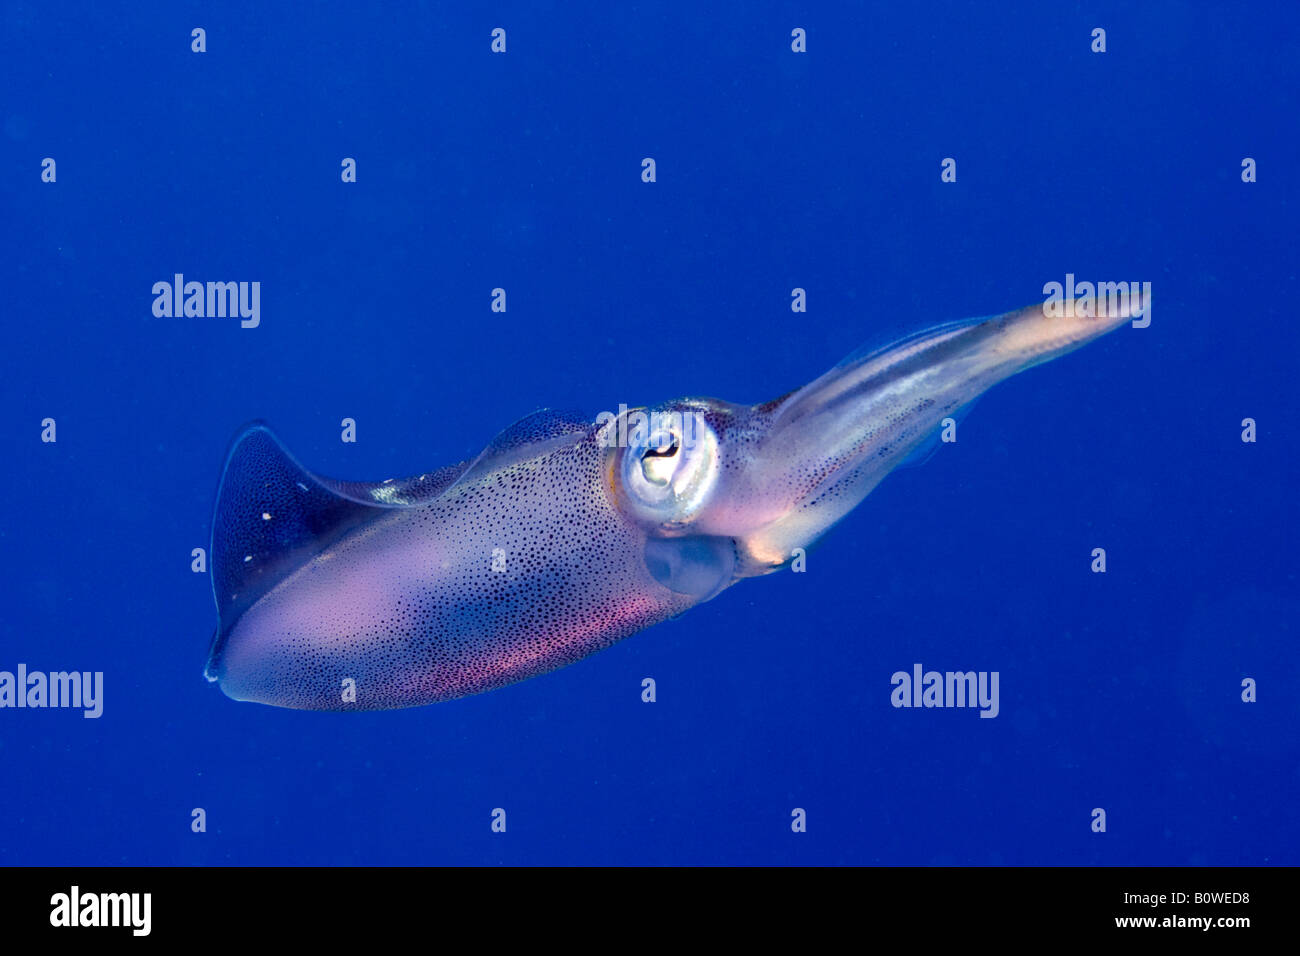 Bigfin Reef Squid, Oval Squid (Sepioteuthis lessoniana), Roatan, Honduras, Caribbean Stock Photo